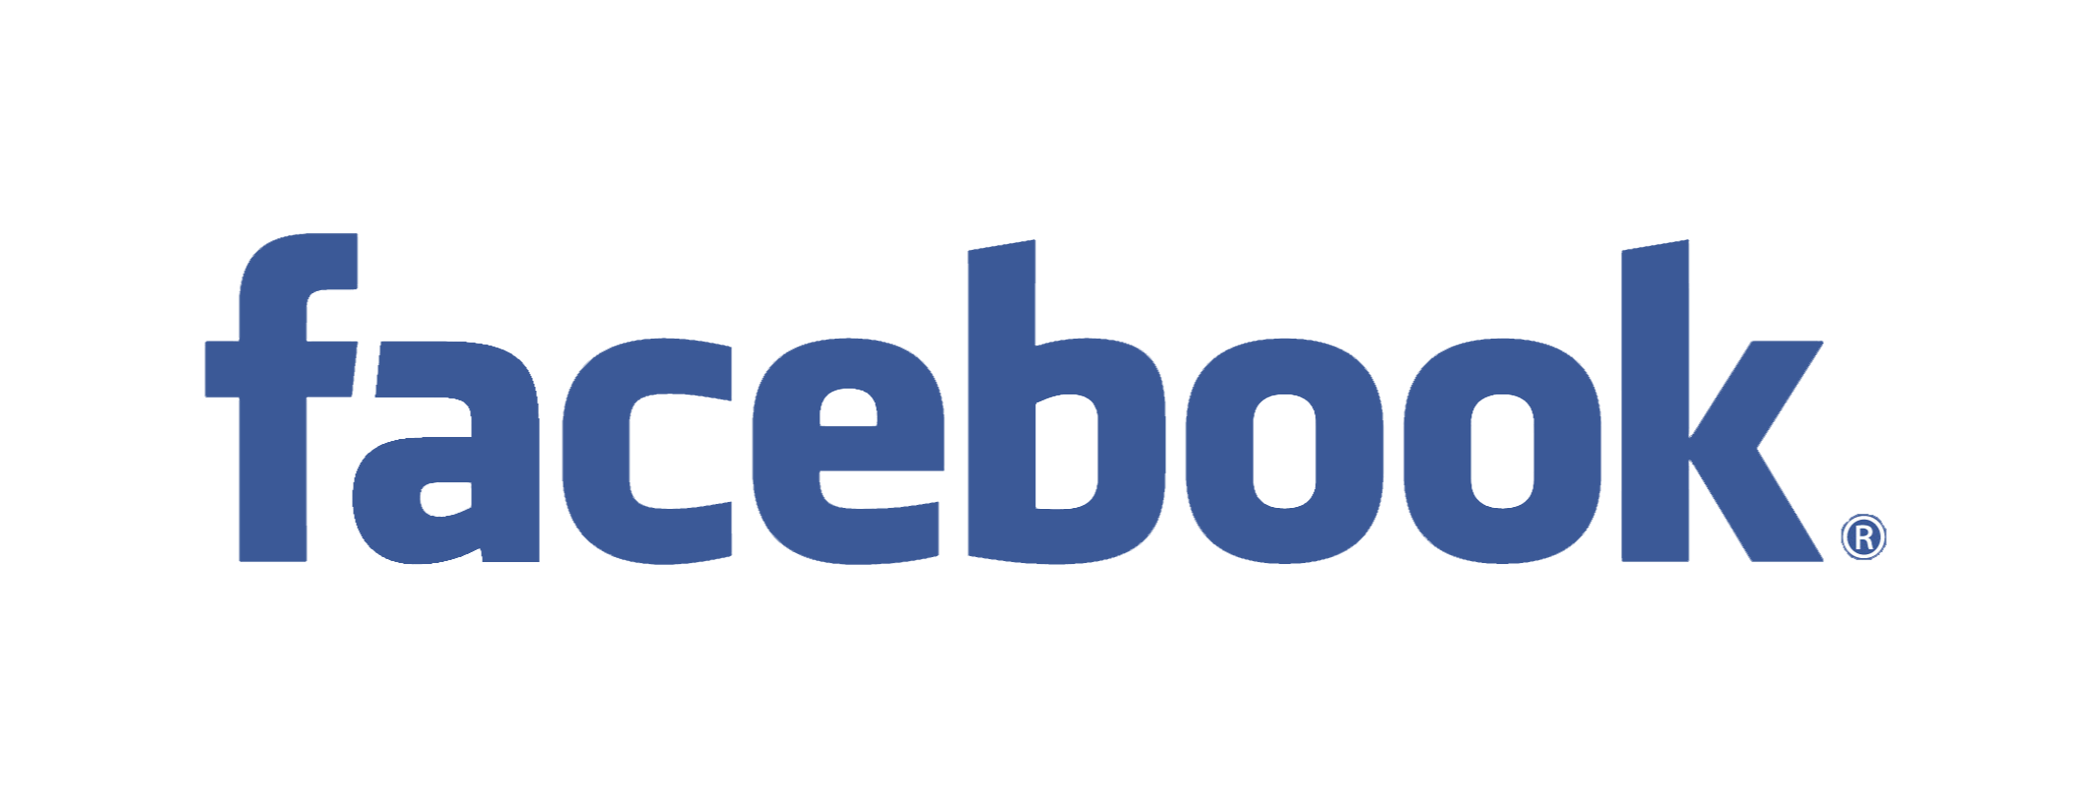 facebook_logo2